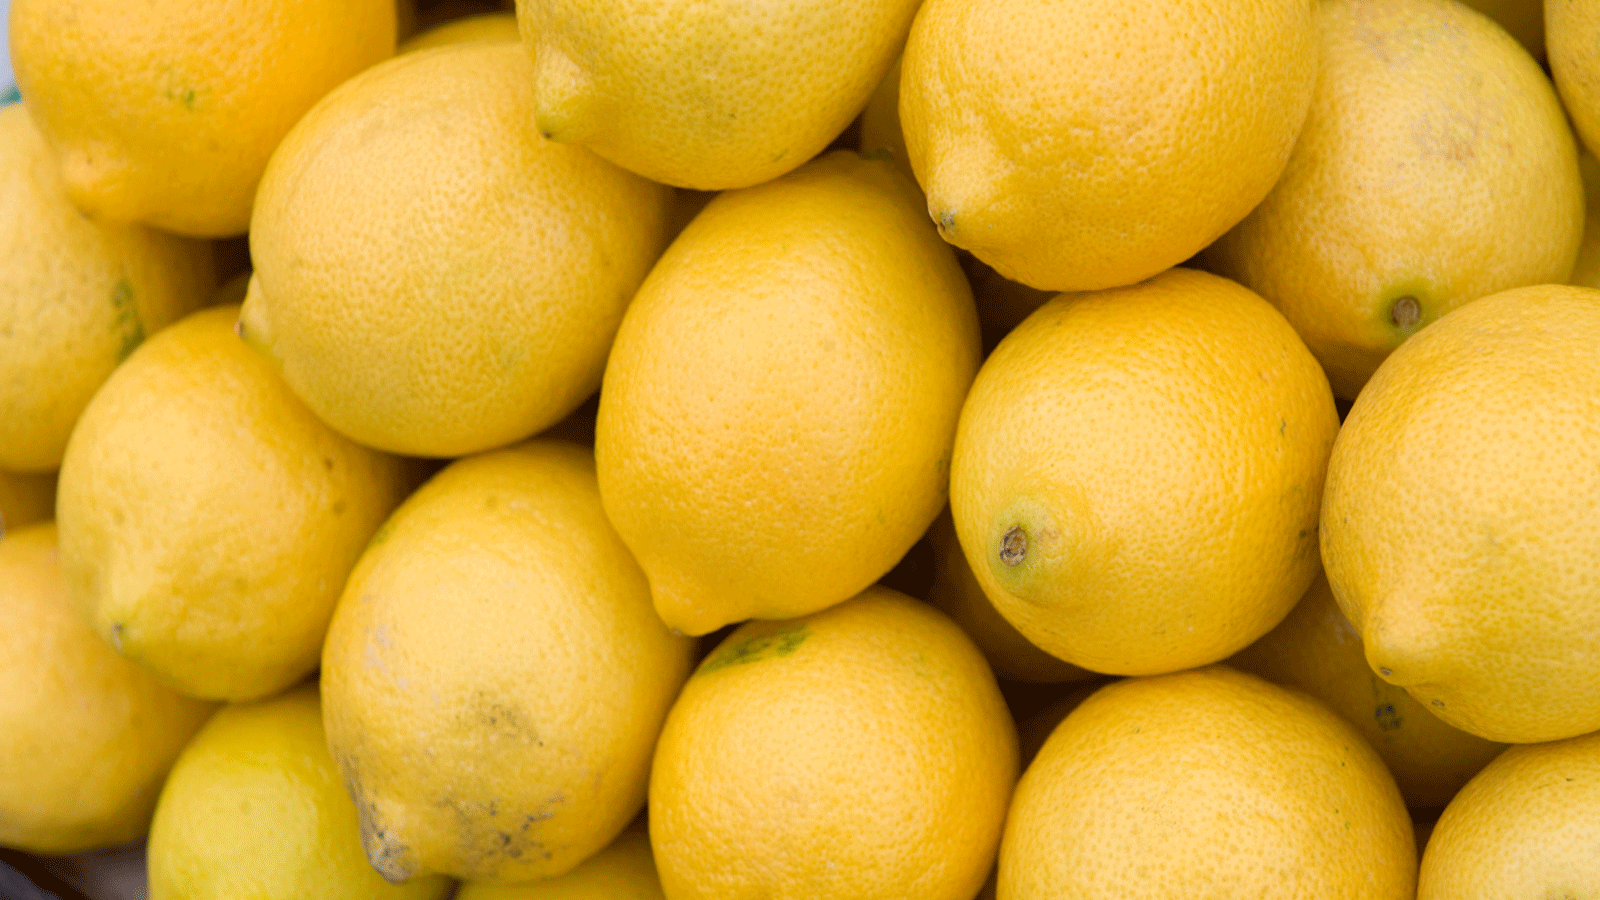 الليمون الحامض فاكهة حمضية غنية بالفيتامينات ومتعددة الفوائد لصحة الجسم